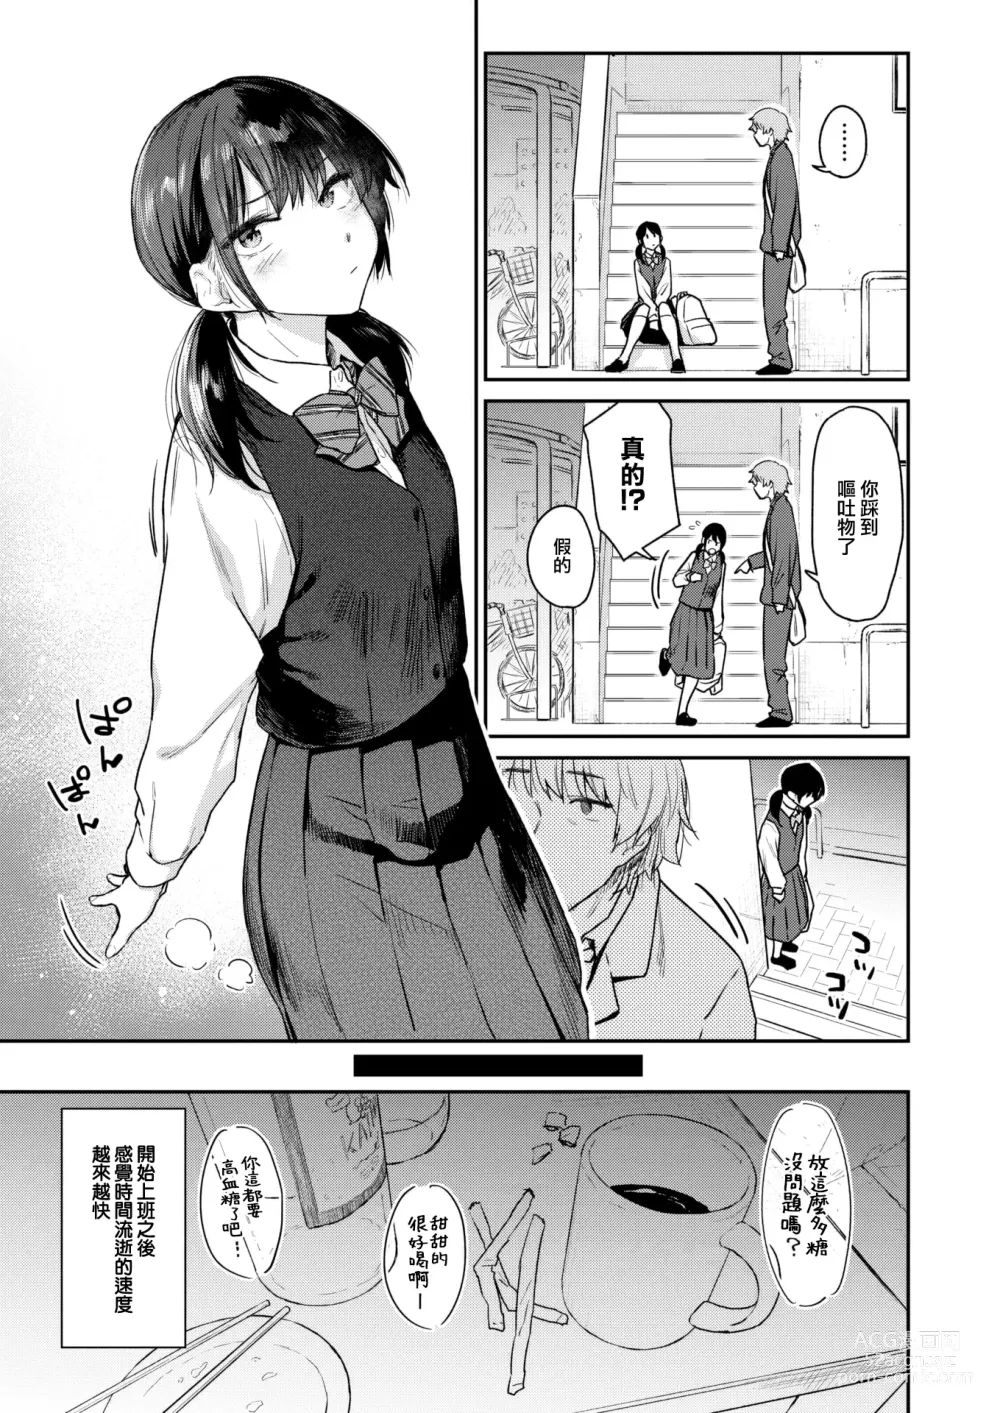 Page 4 of manga Okaeri - Im waiting for you....